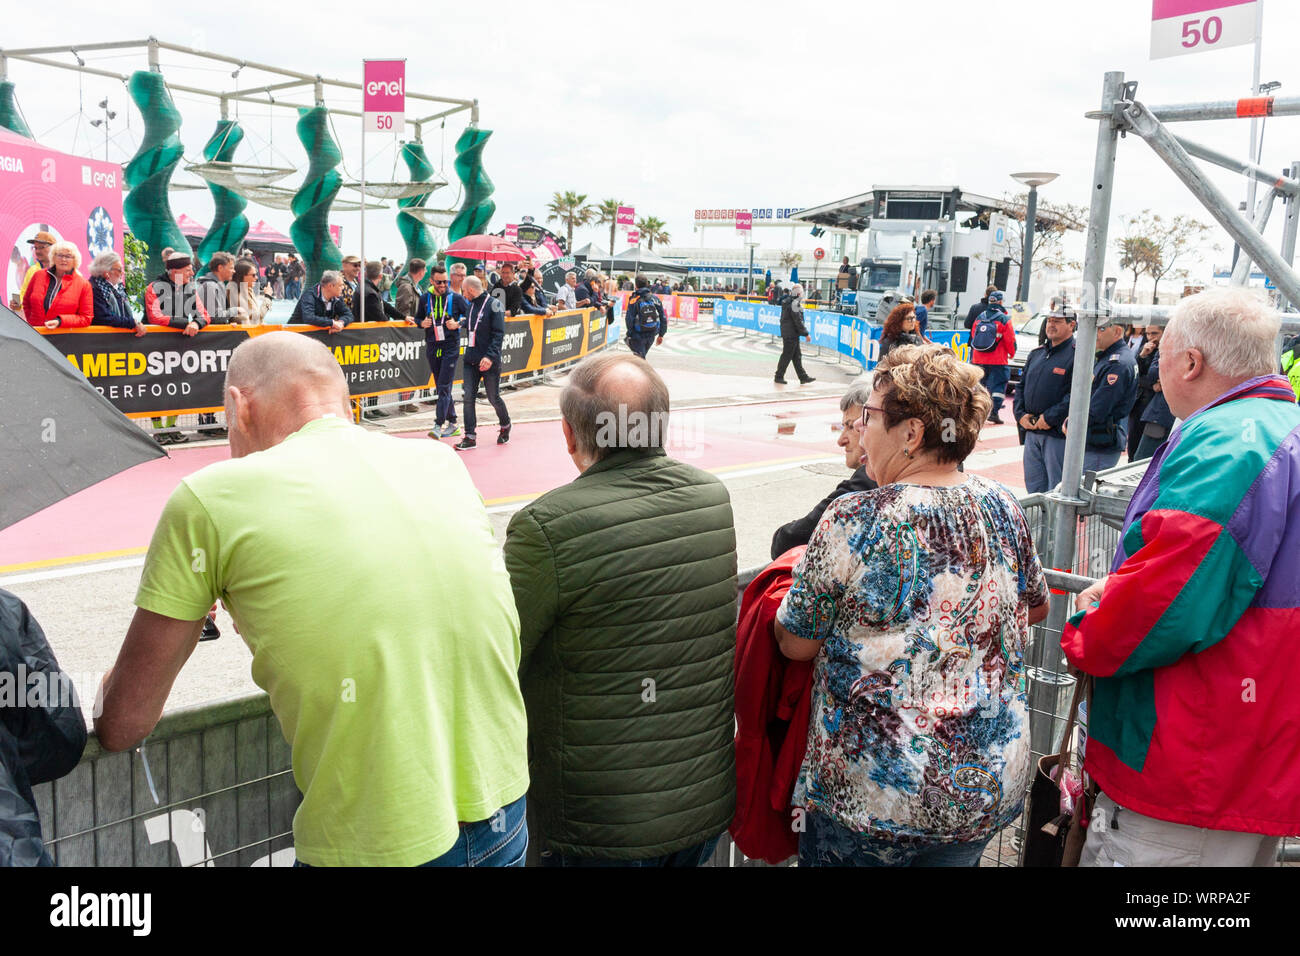 Las multitudes esperando el inicio de la etapa 9 de la TT 2019 Giro d'Italia. Riccione, Italia Foto de stock